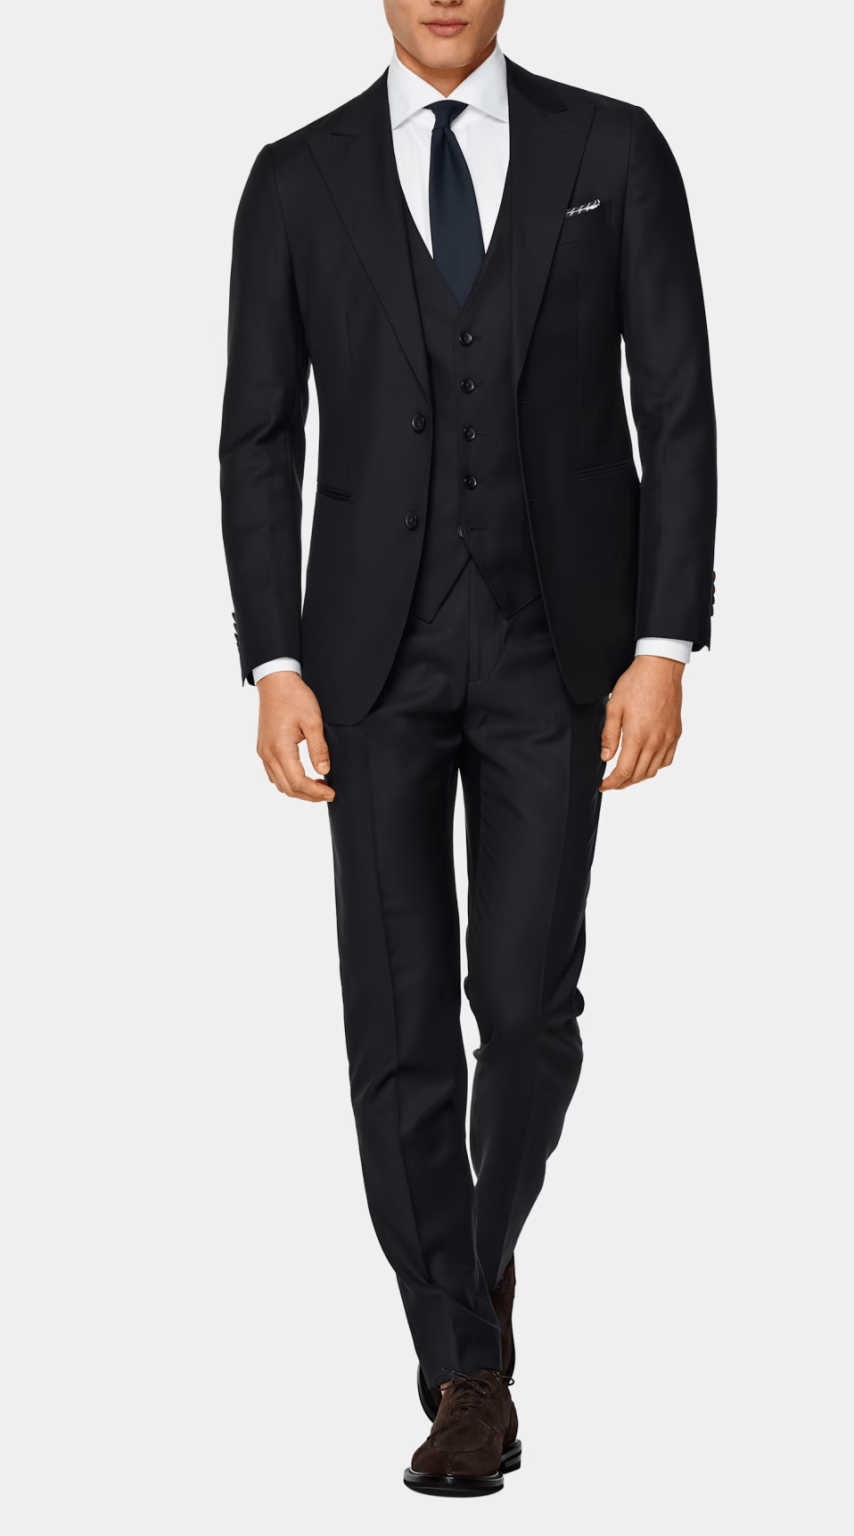 How a men's suit should fit